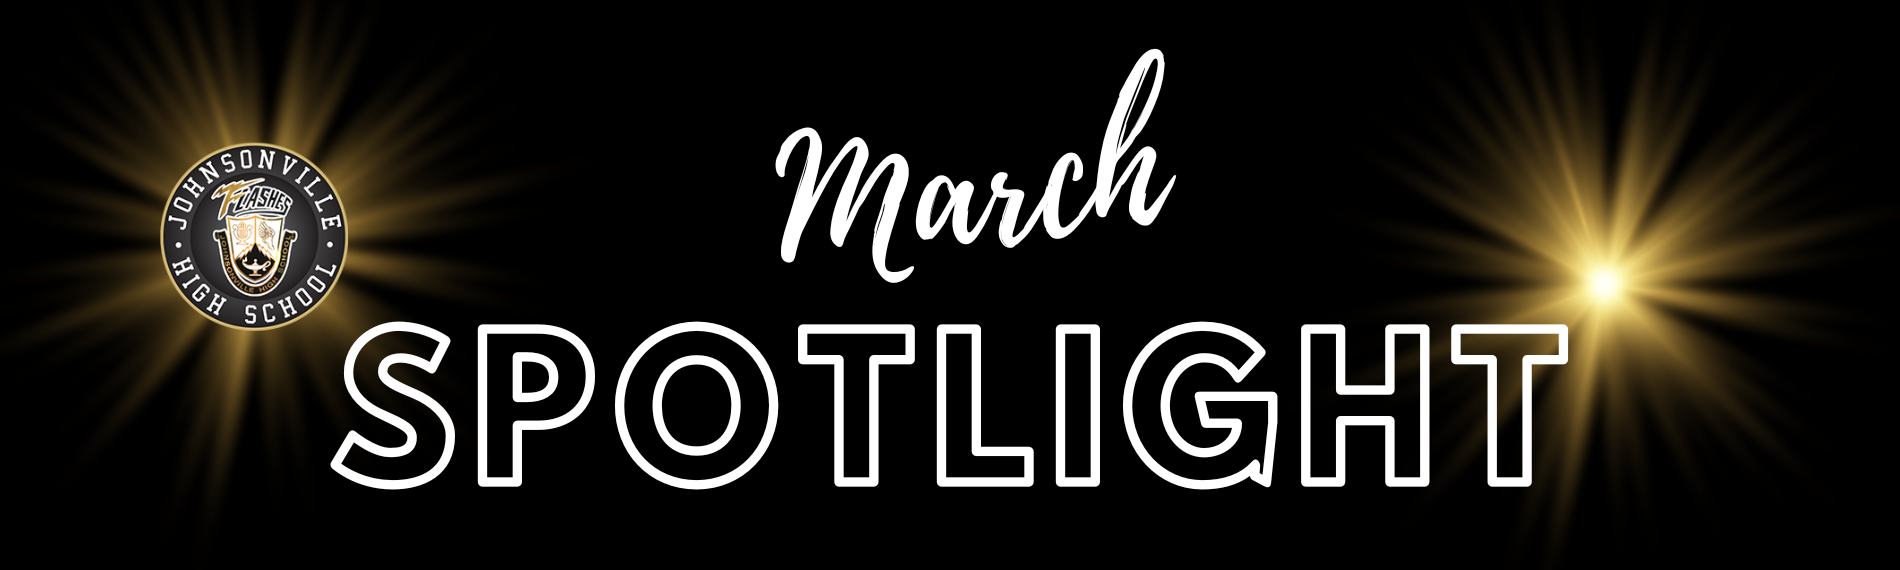 March Spotlights